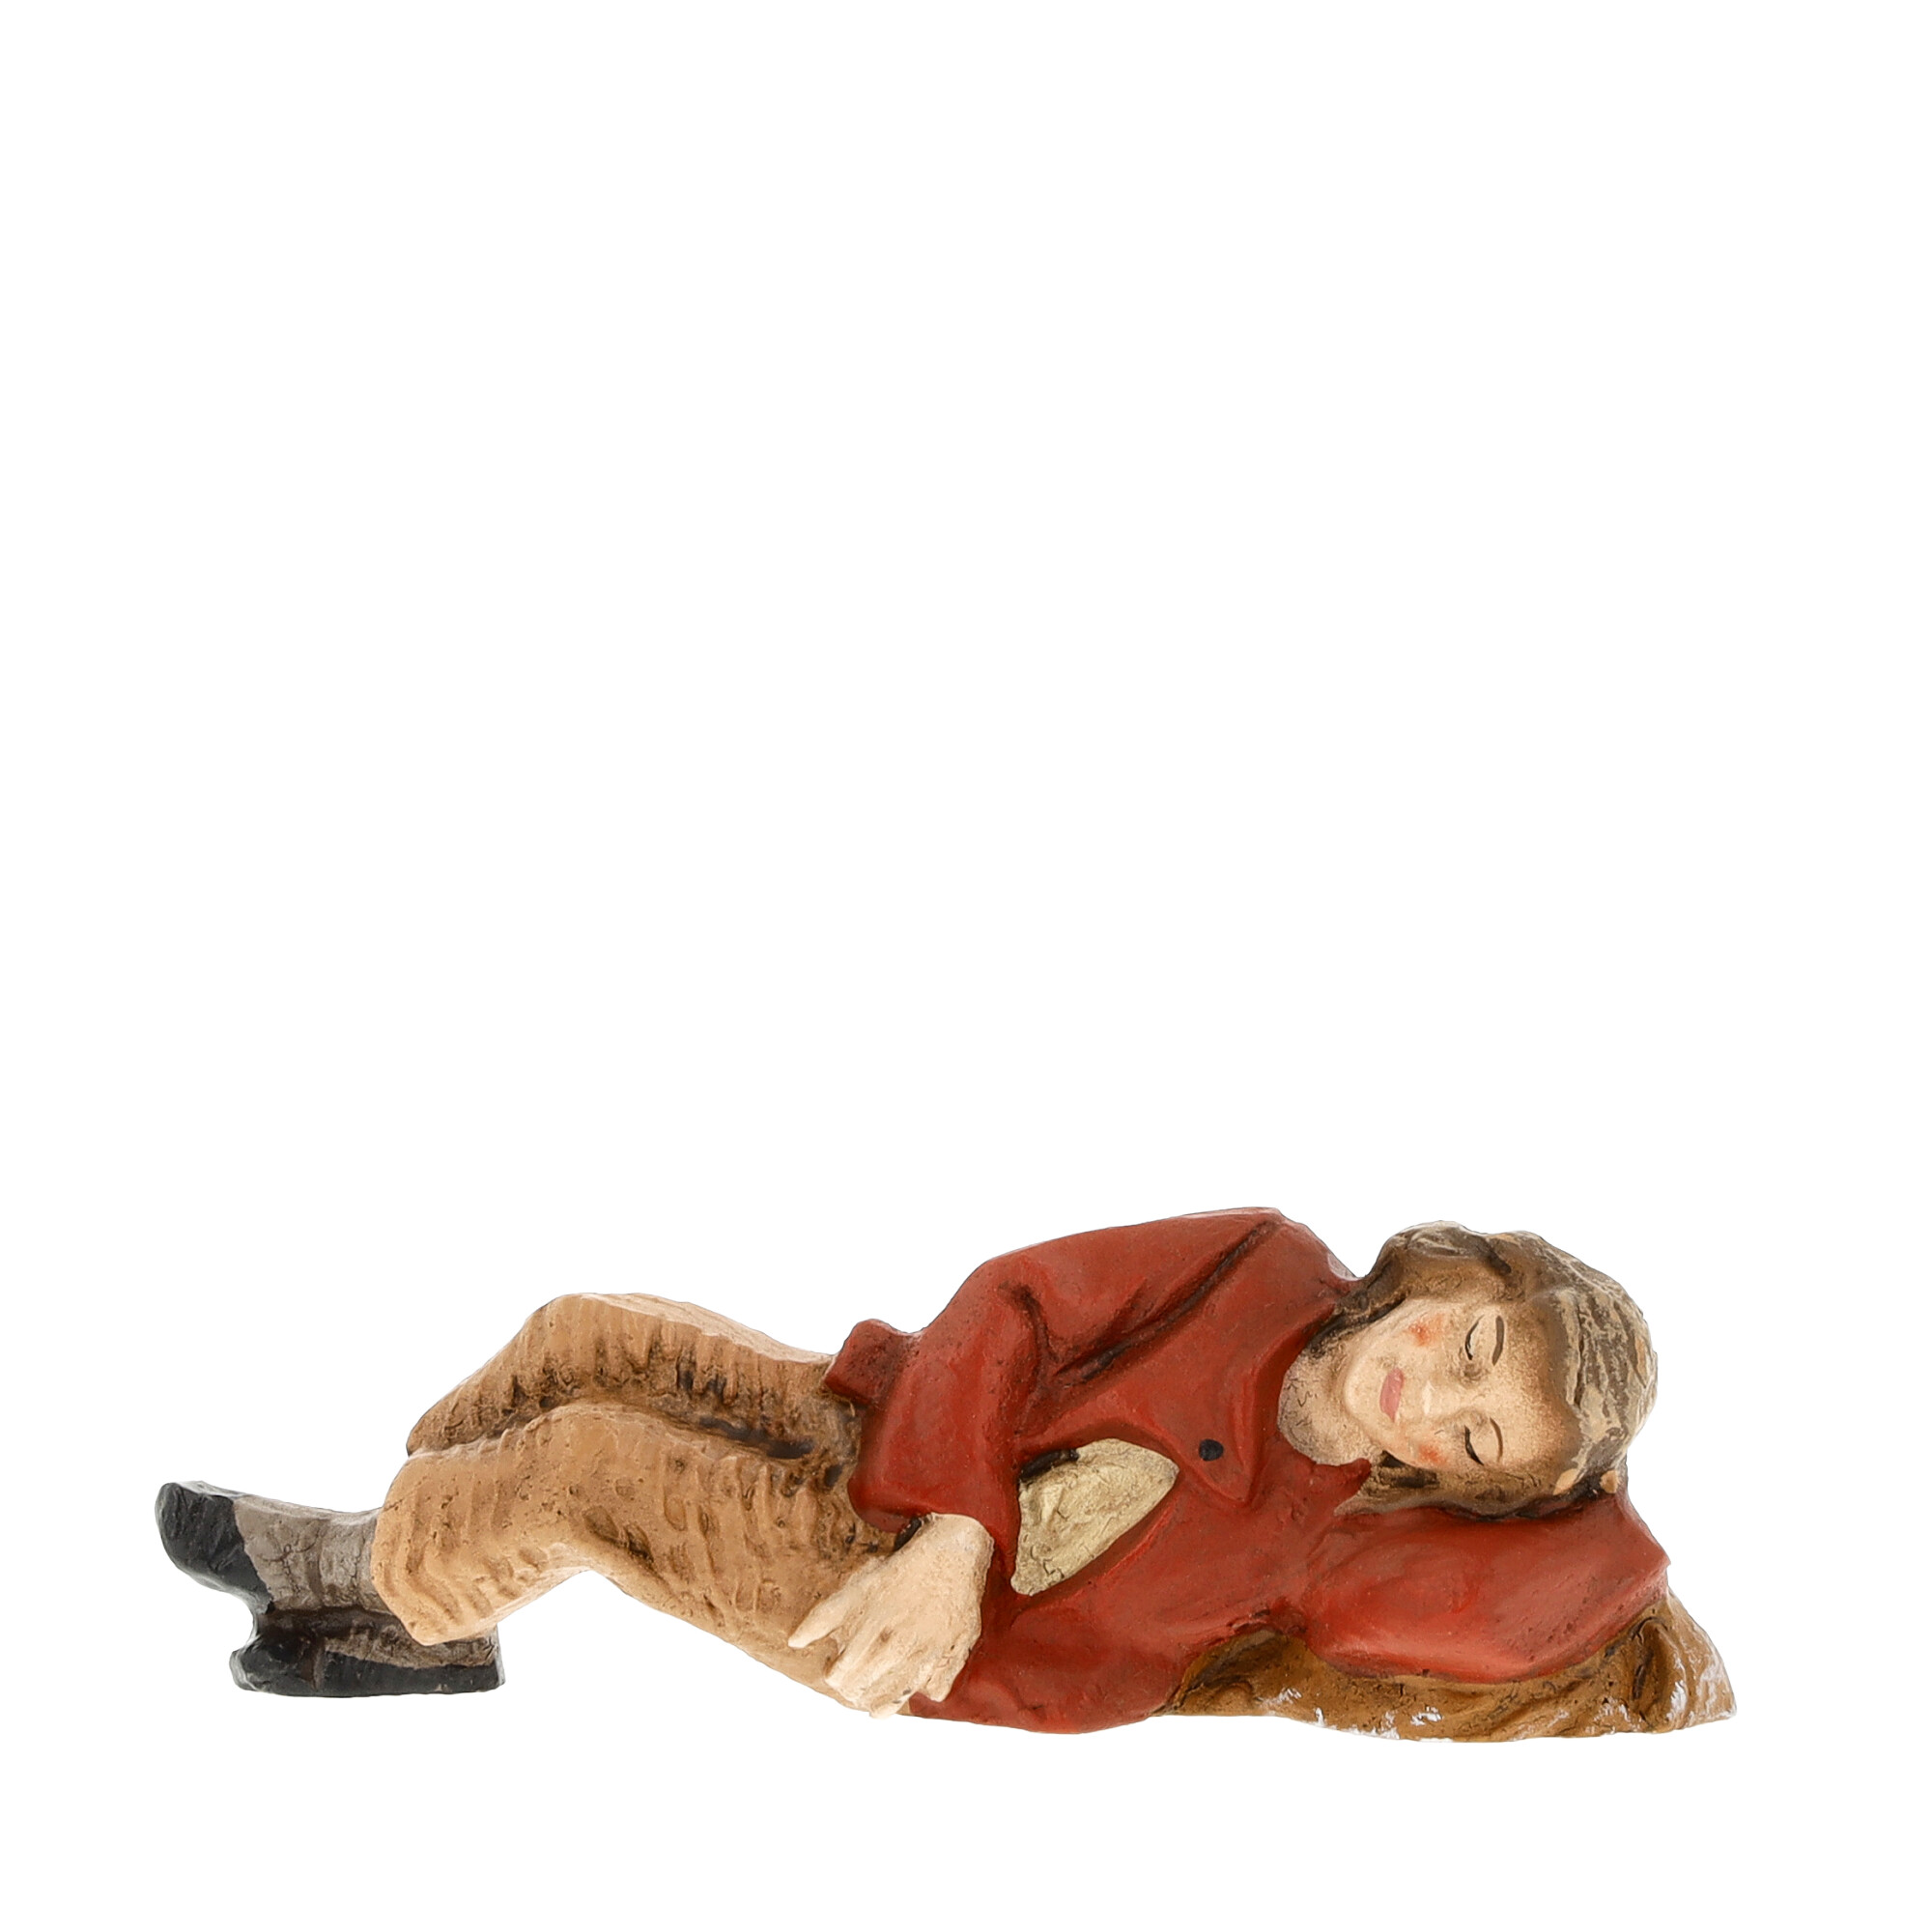 Sleeping shepdherd, MAROLIN Nativity figure